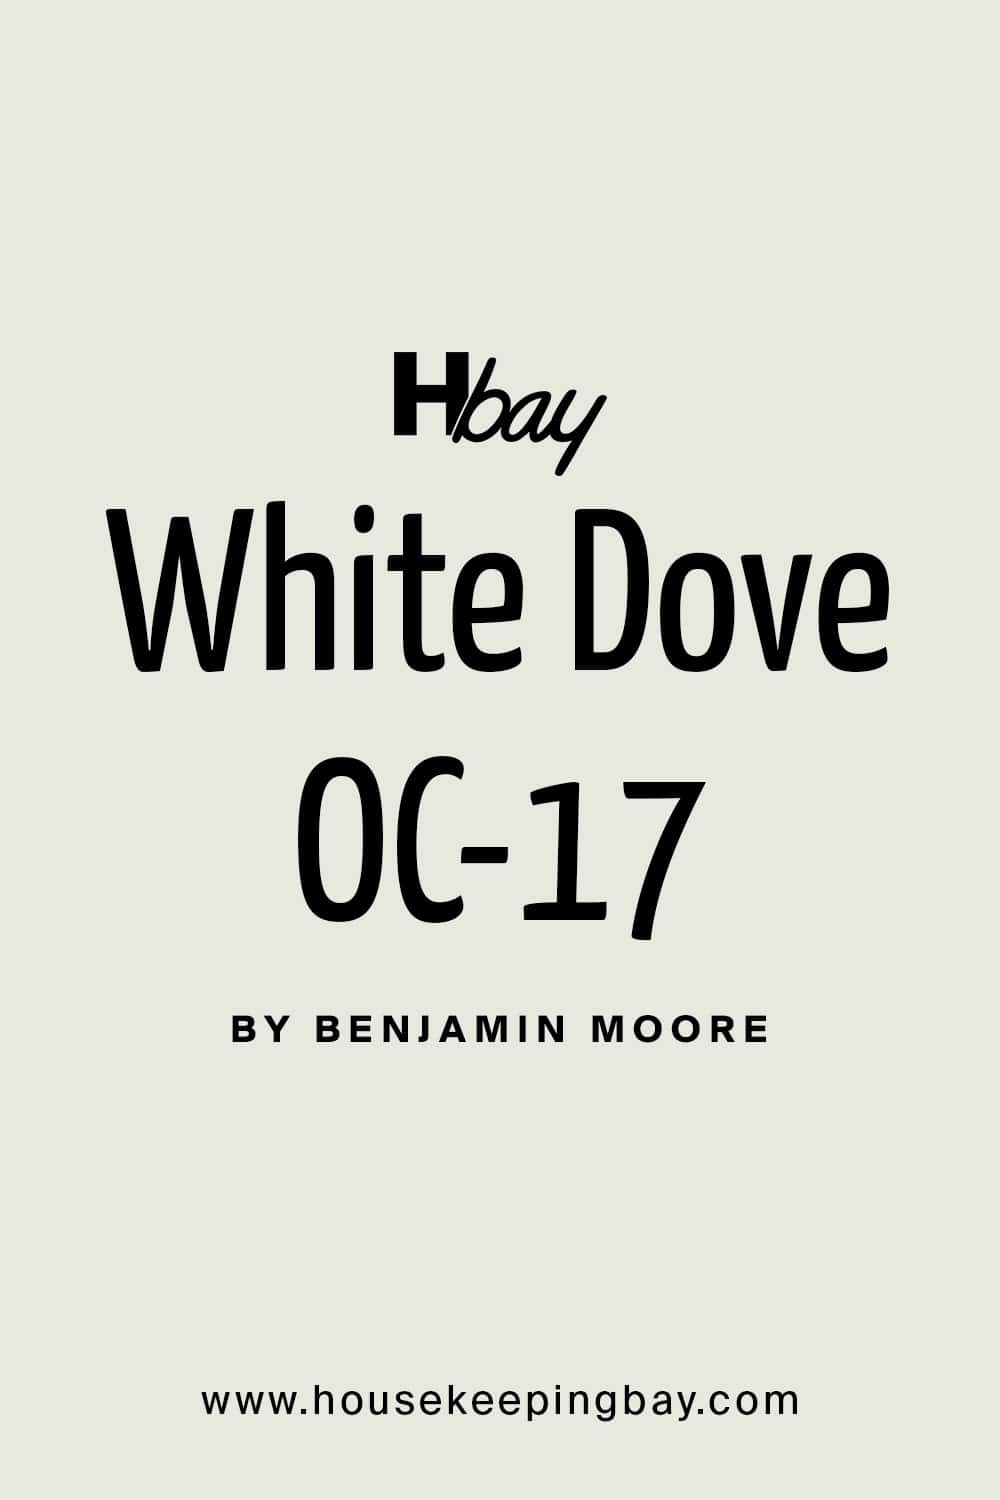 White Dove OC 17 by Benjamin Moore